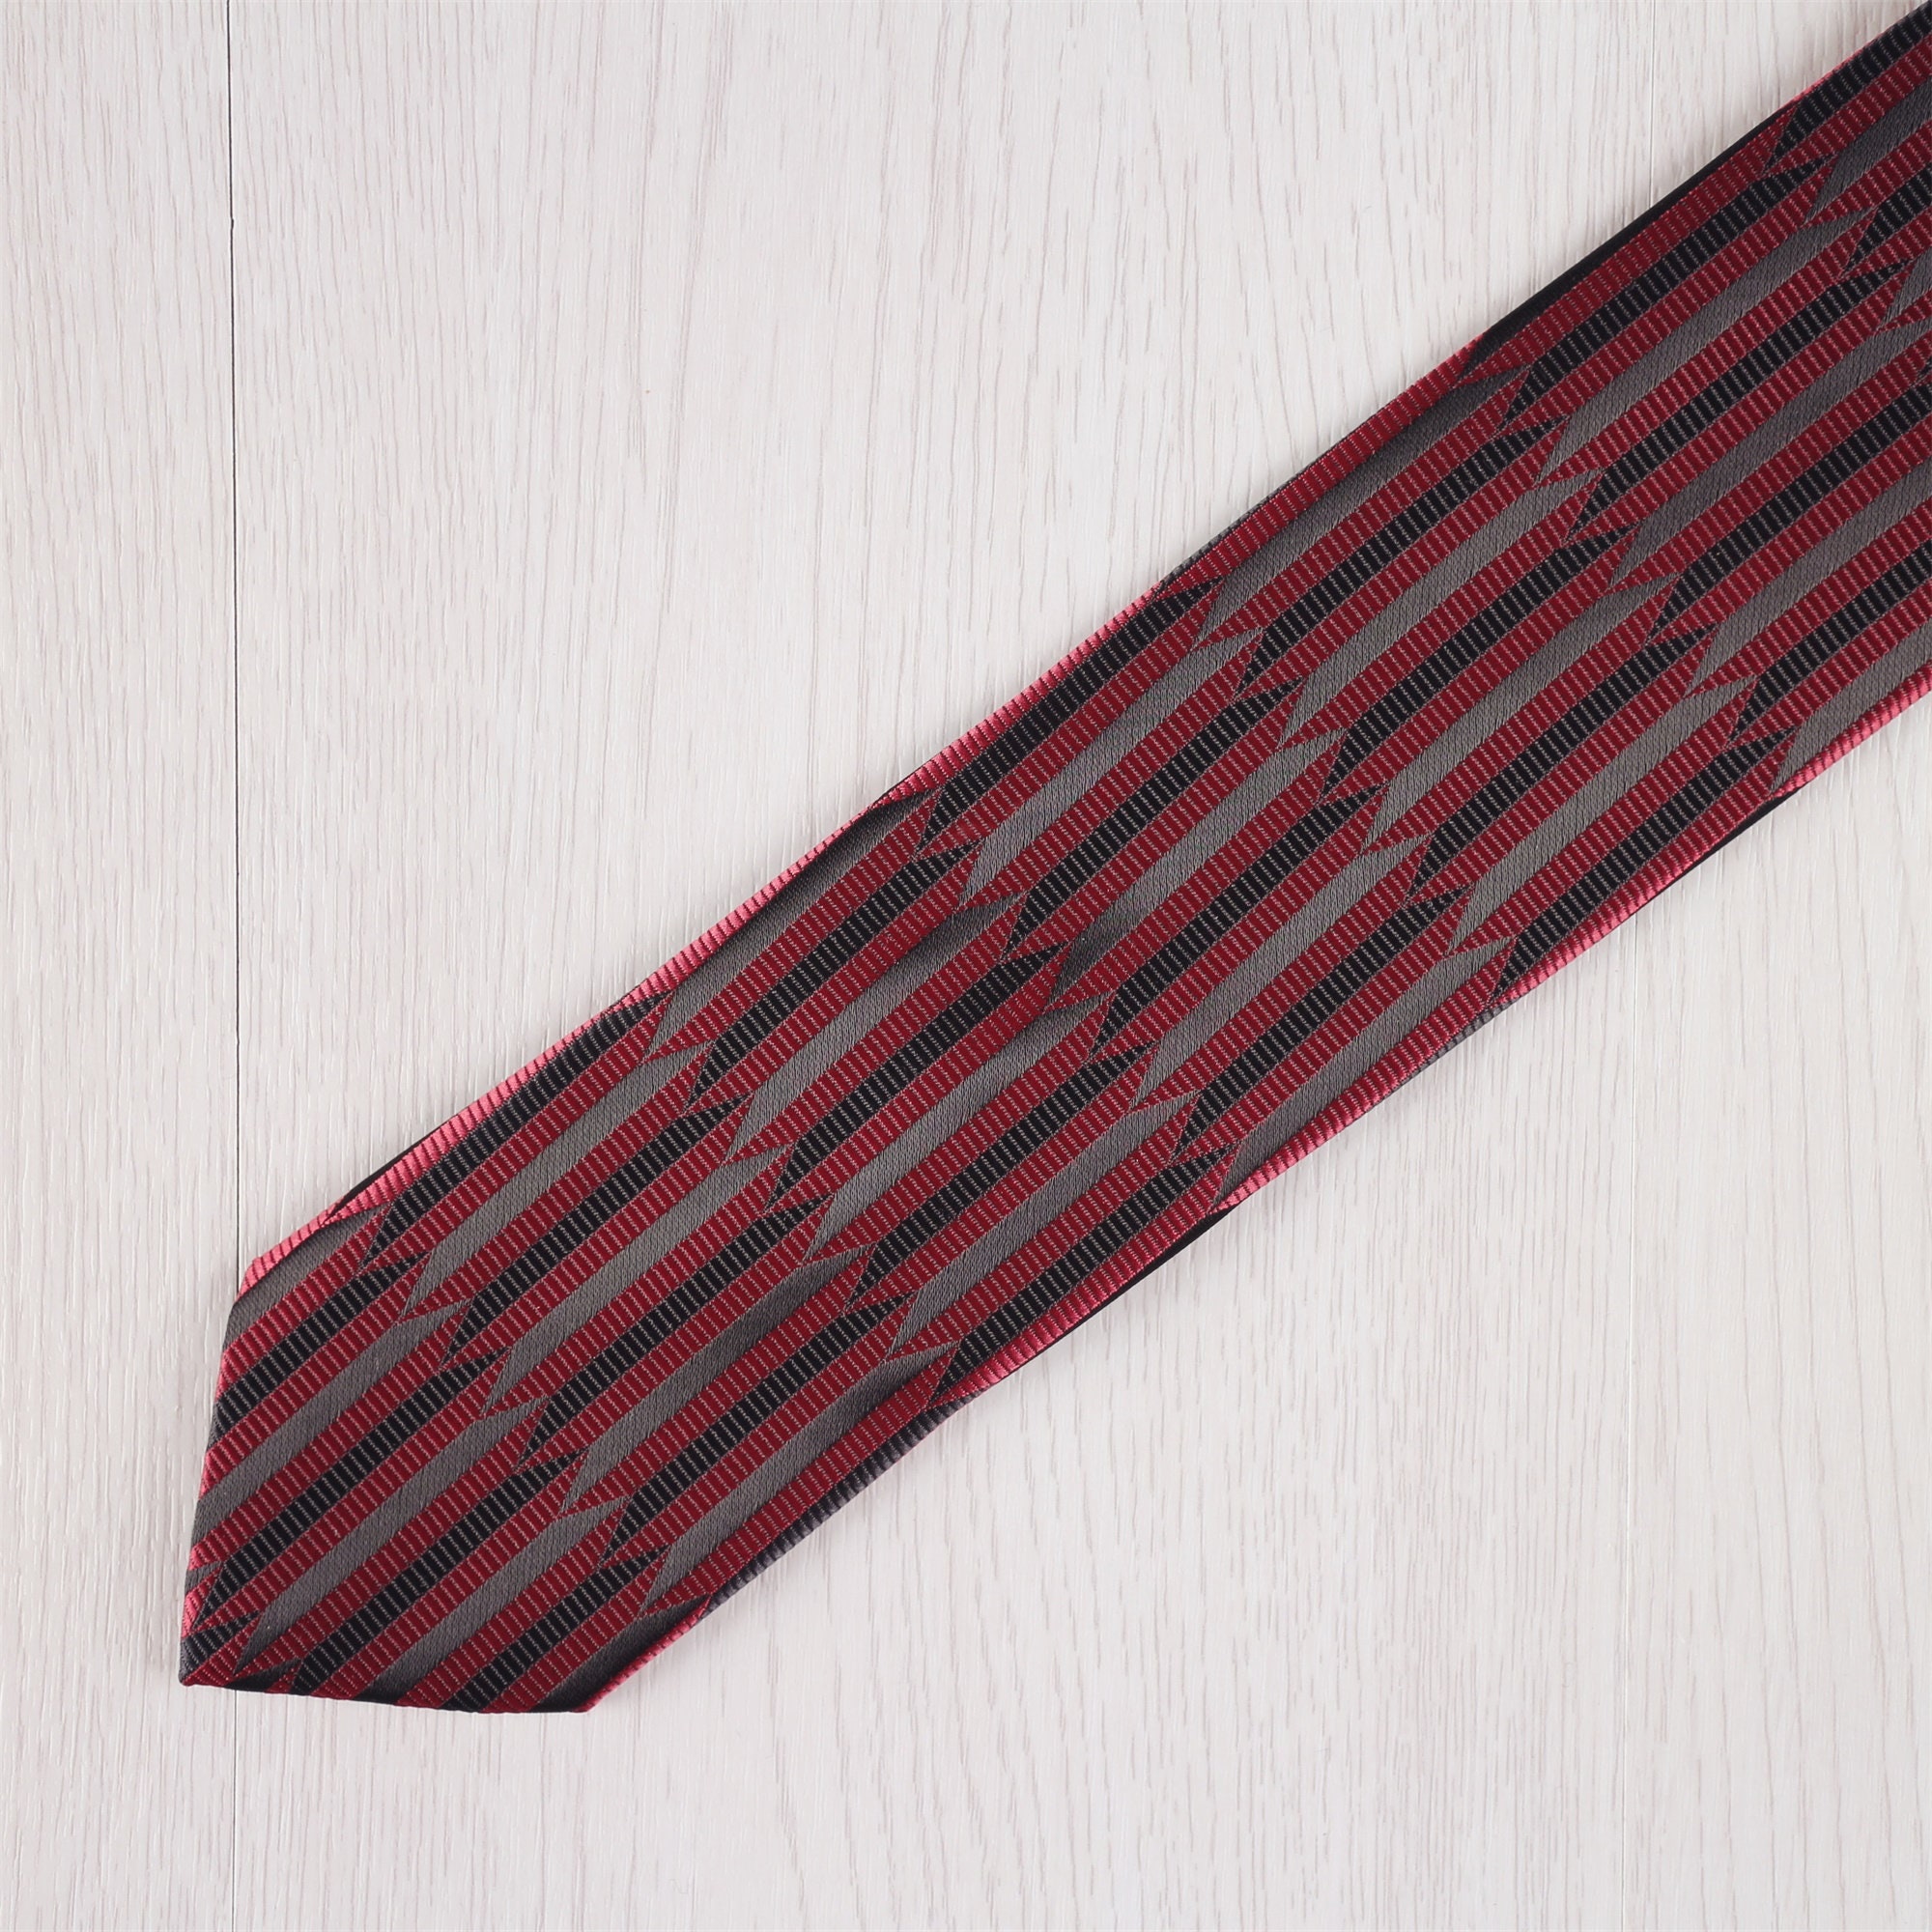 Blue Tie Burgundy Tie Red Tie Gold Tie Striped Necktie - Etsy